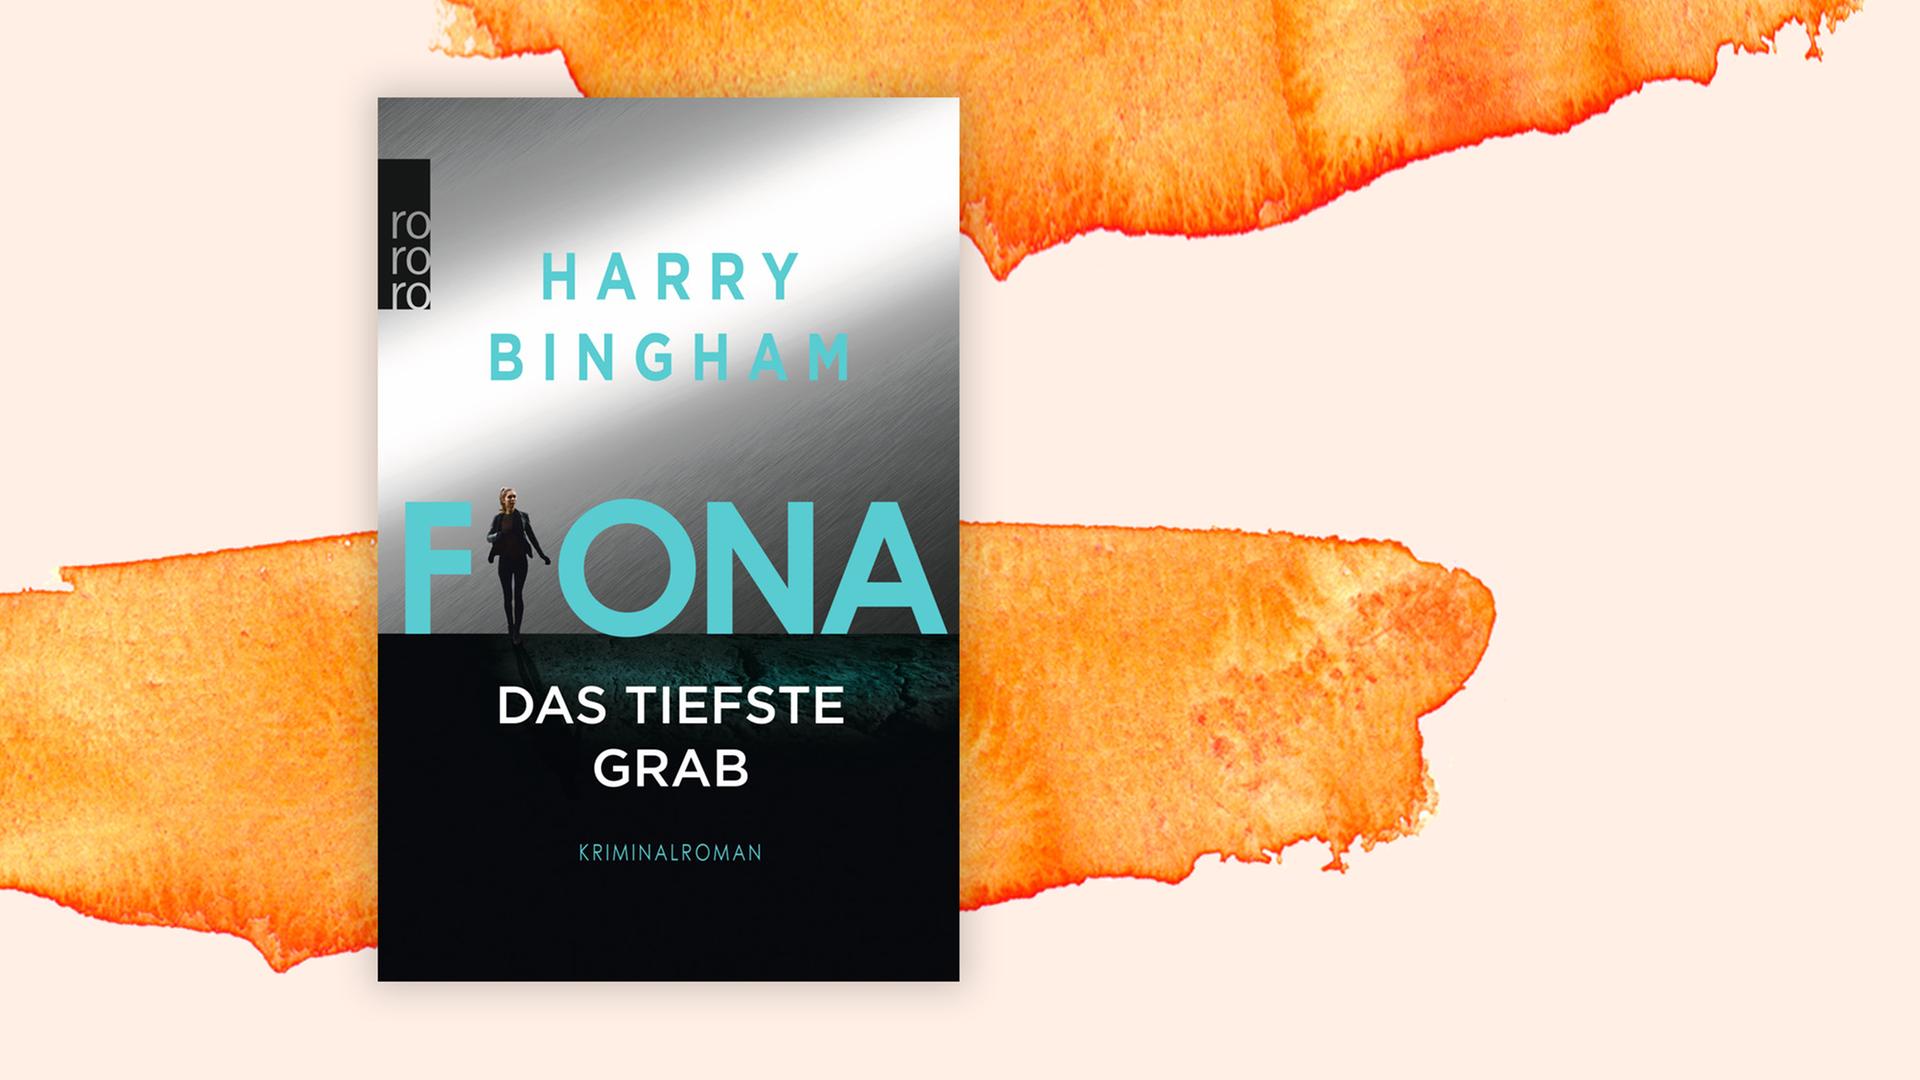 Buchcover zu "Fiona - Das tiefste Gab" von Harry Bingham